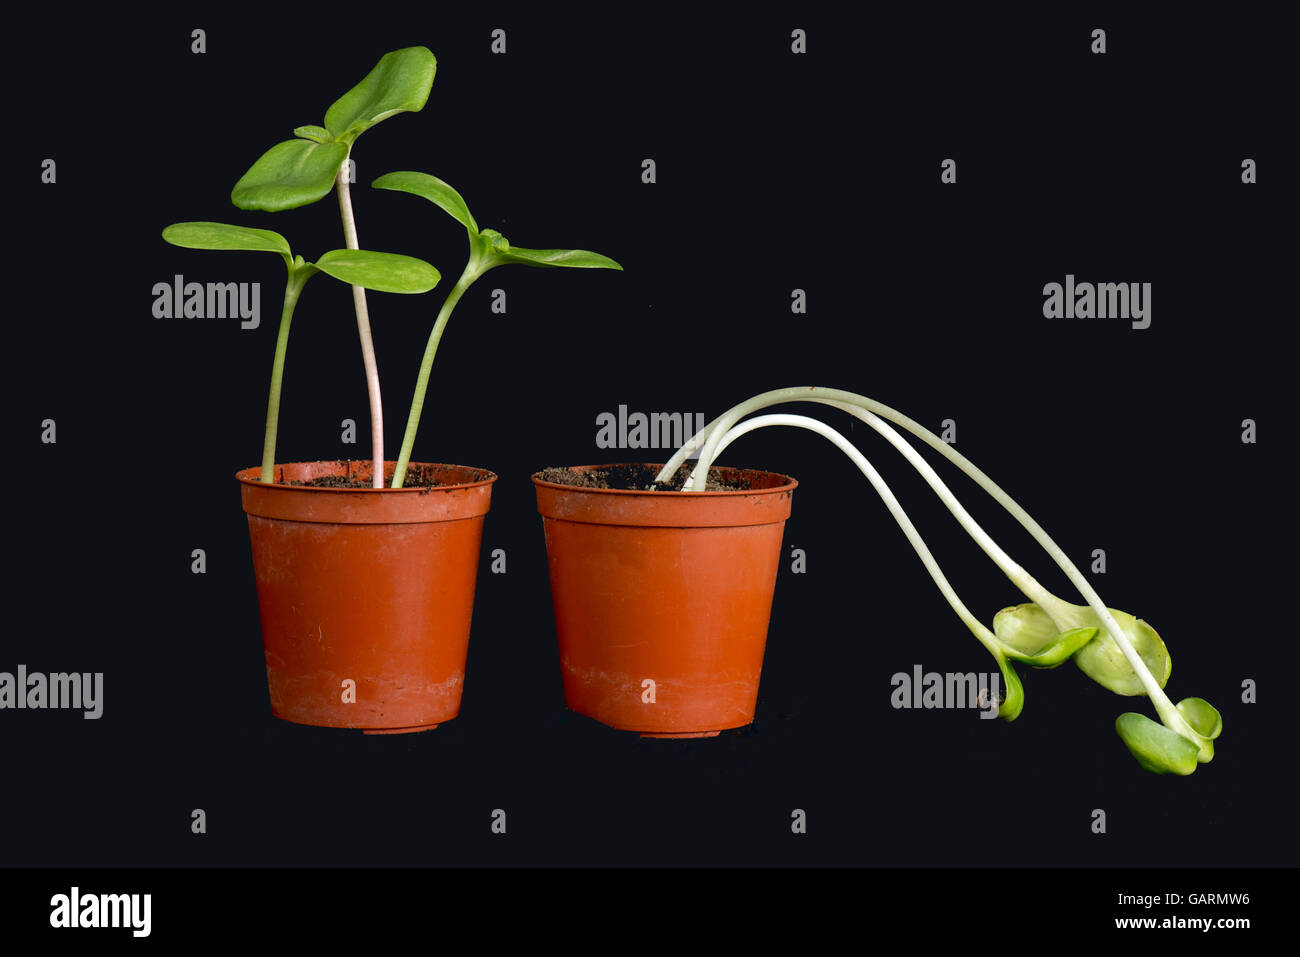 Las plántulas de girasol cultivado con y etiolated, cloróticas y semana sin luz (derecha). Foto de stock